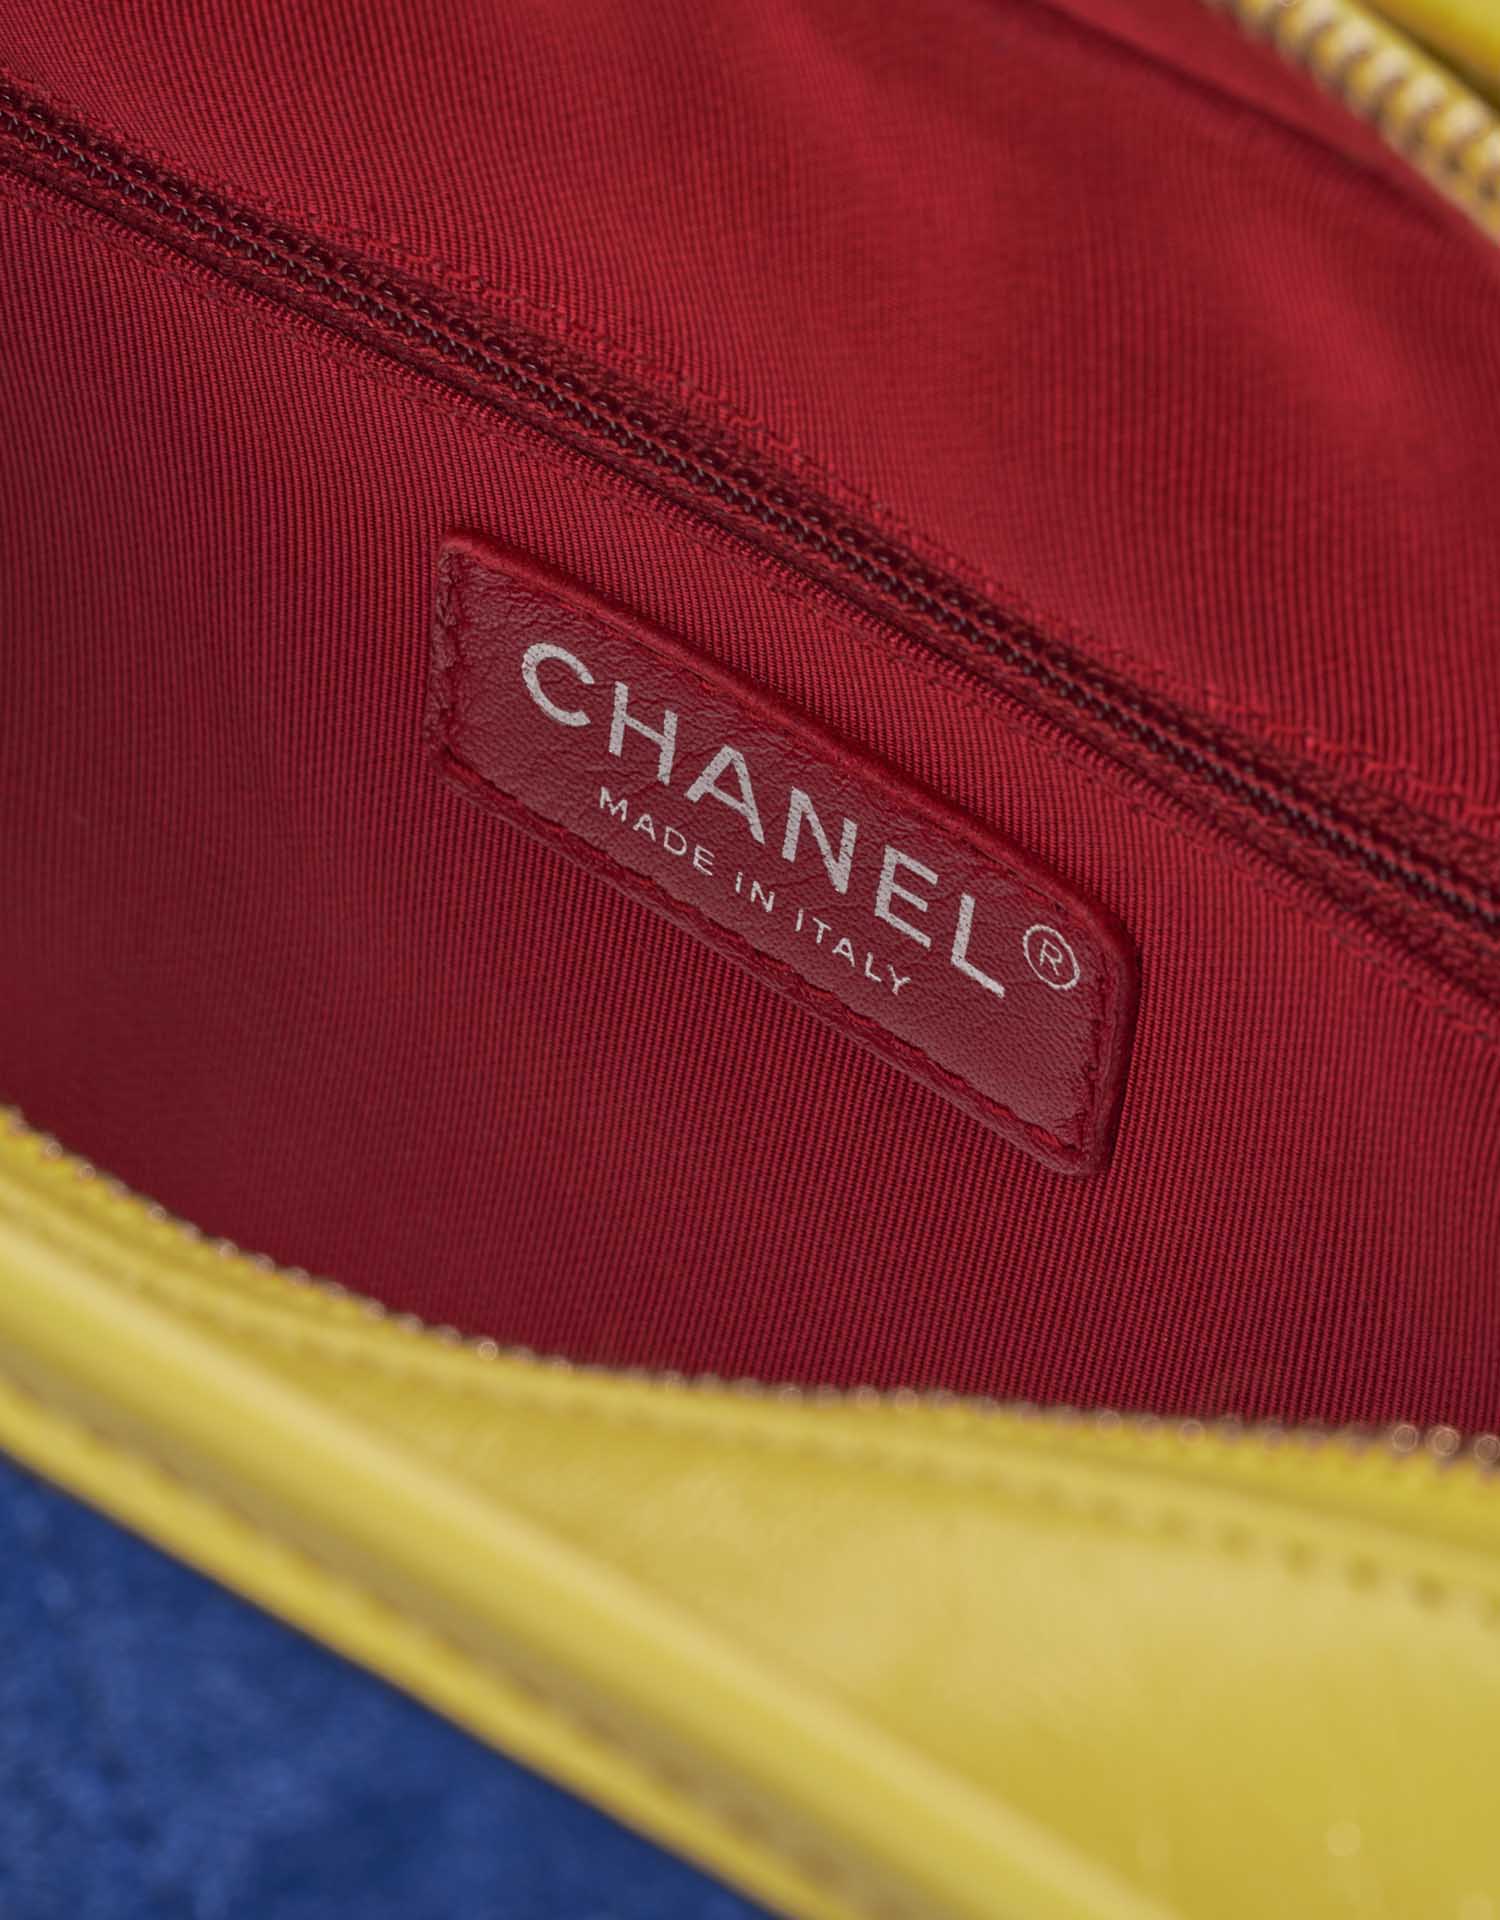 Gebrauchte Chanel Tasche Gabrielle Medium Kalbsleder / Wildleder Blau / Rot / Gelb Blau, Multicolour Logo | Verkaufen Sie Ihre Designer-Tasche auf Saclab.com